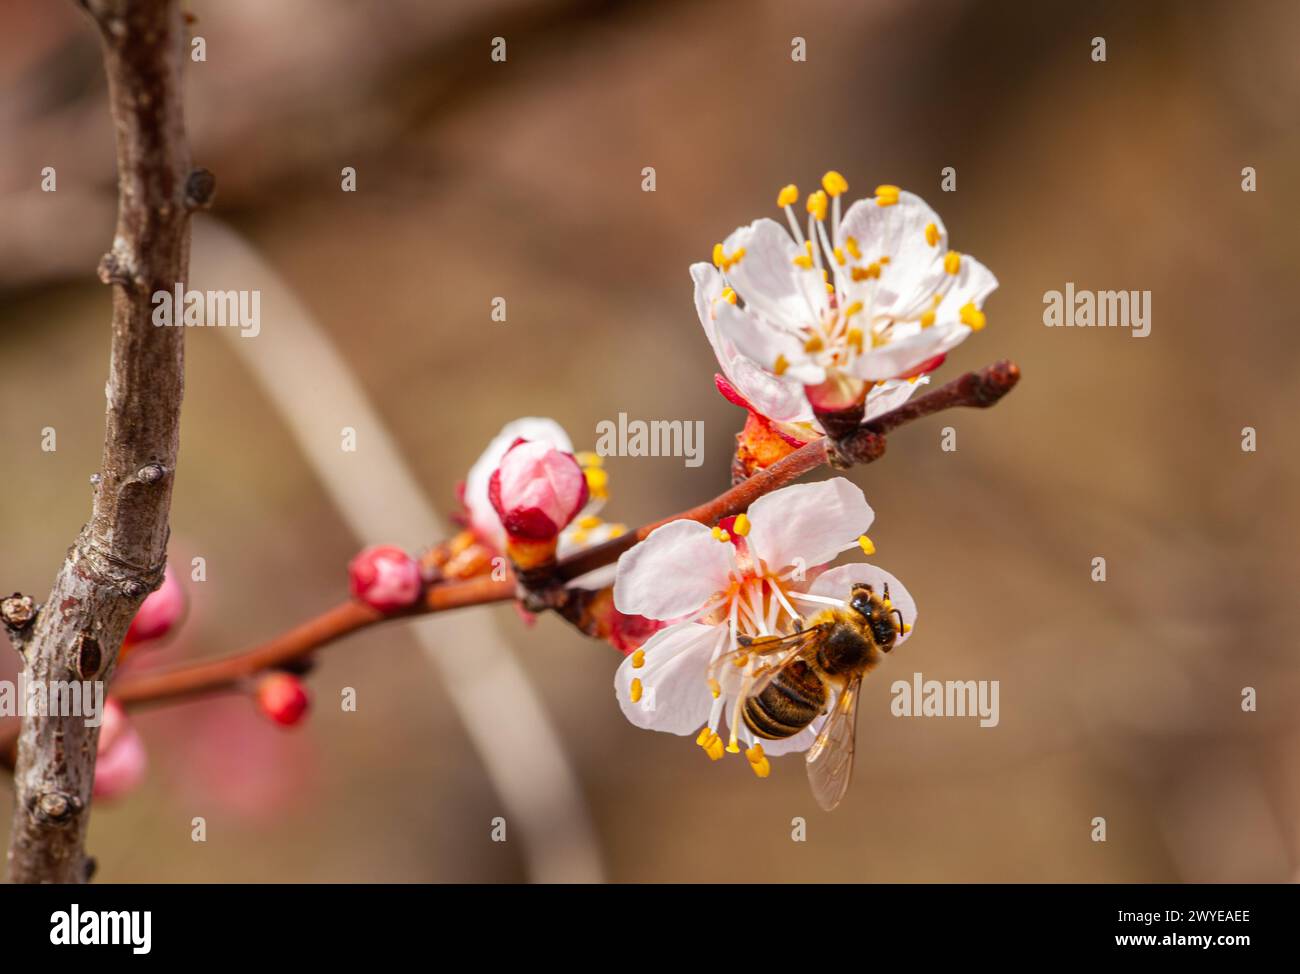 Eine Biene bestäubt eine Pfirsichblüte am Frühlingstag. Hochwertige Fotos Stockfoto